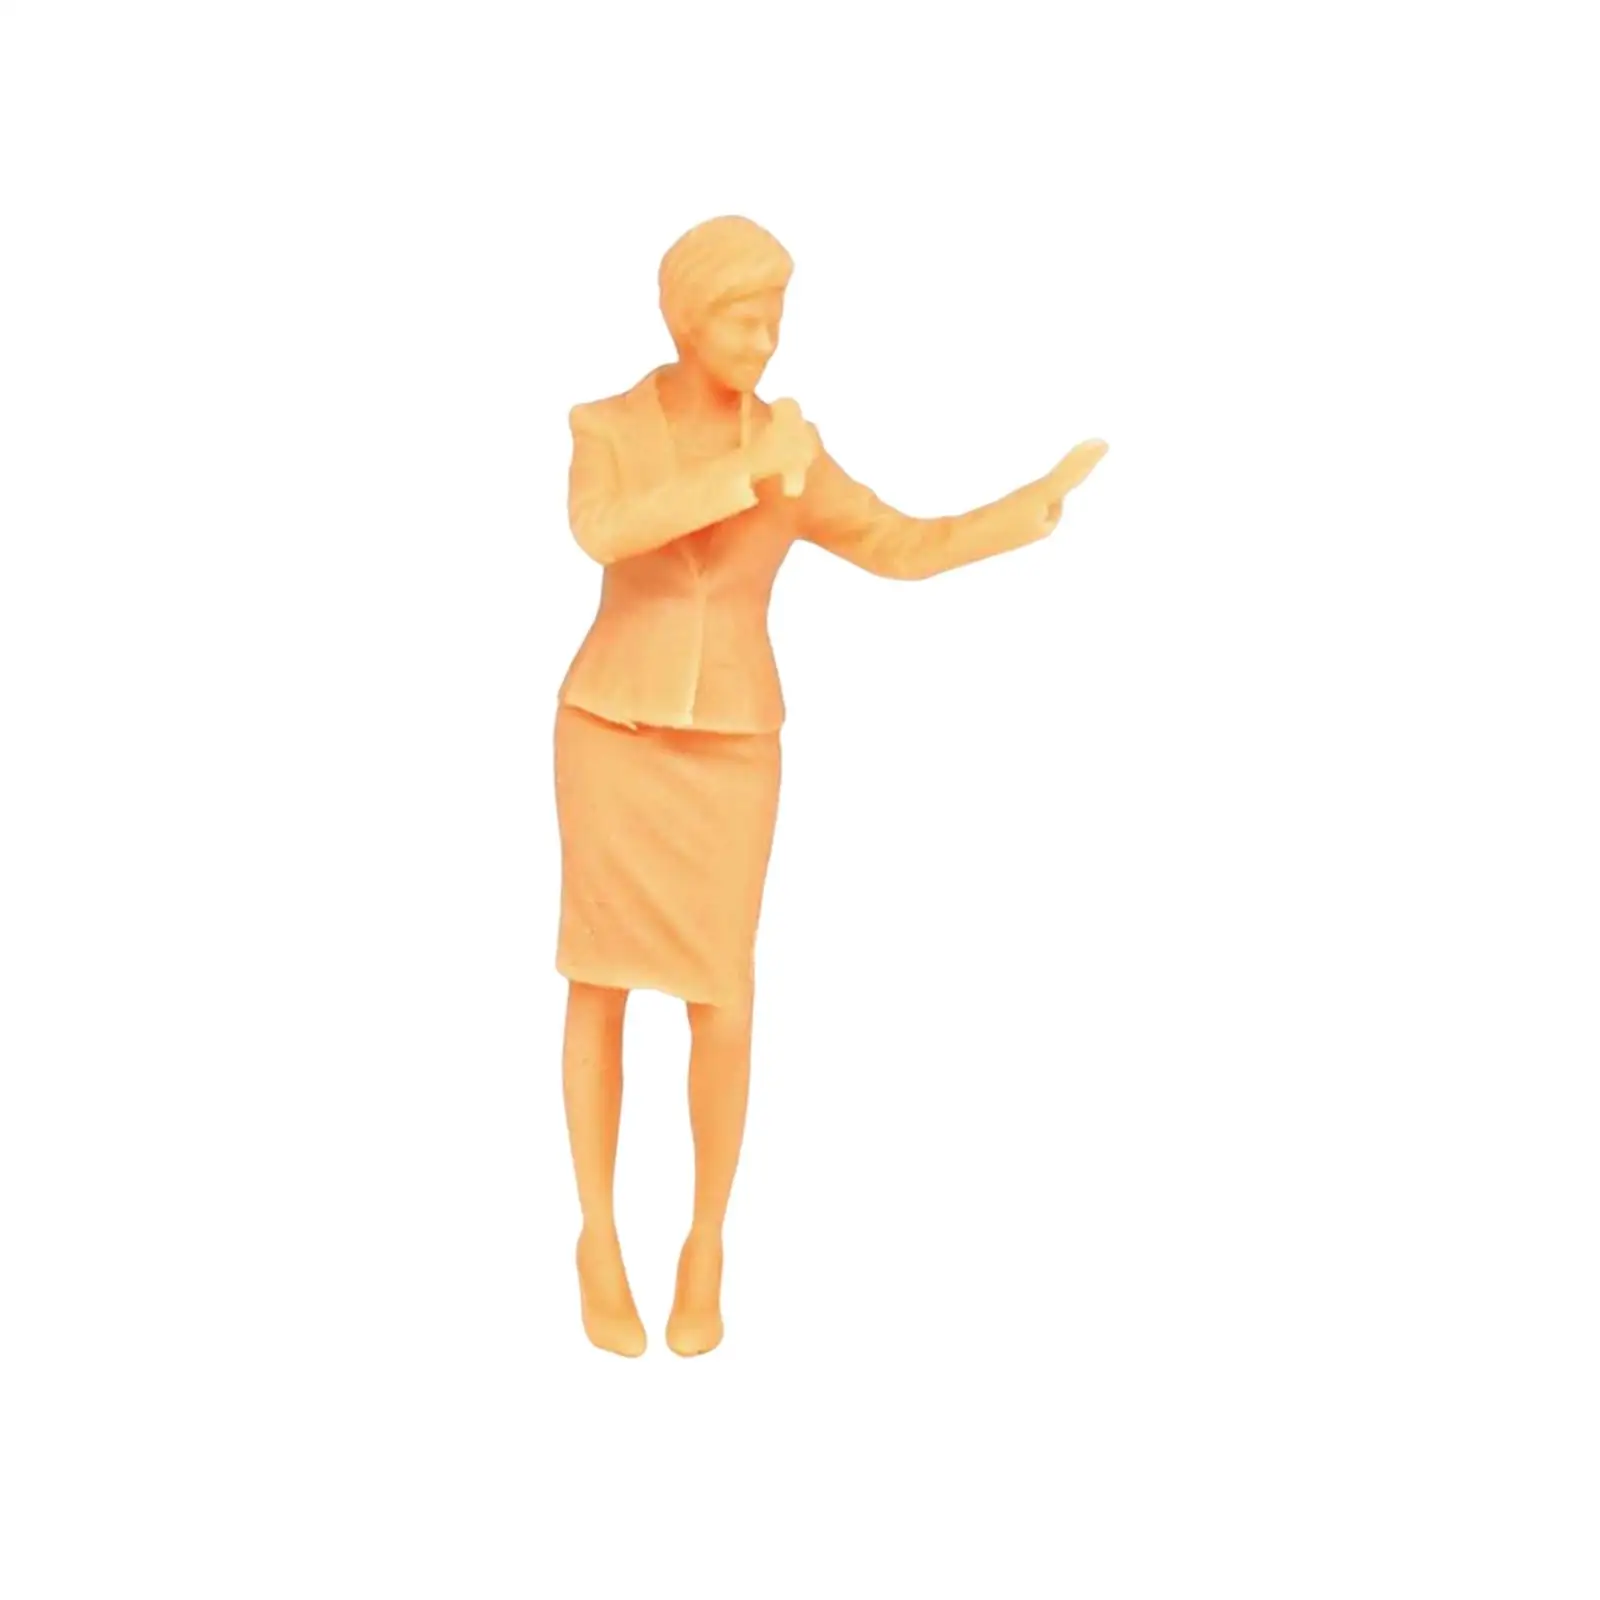 Resin 1/64 Scale Figures Realistic Figures Simulation Figurines 1/64 Scale Figures Diorama Layout Miniature Scenes Decor